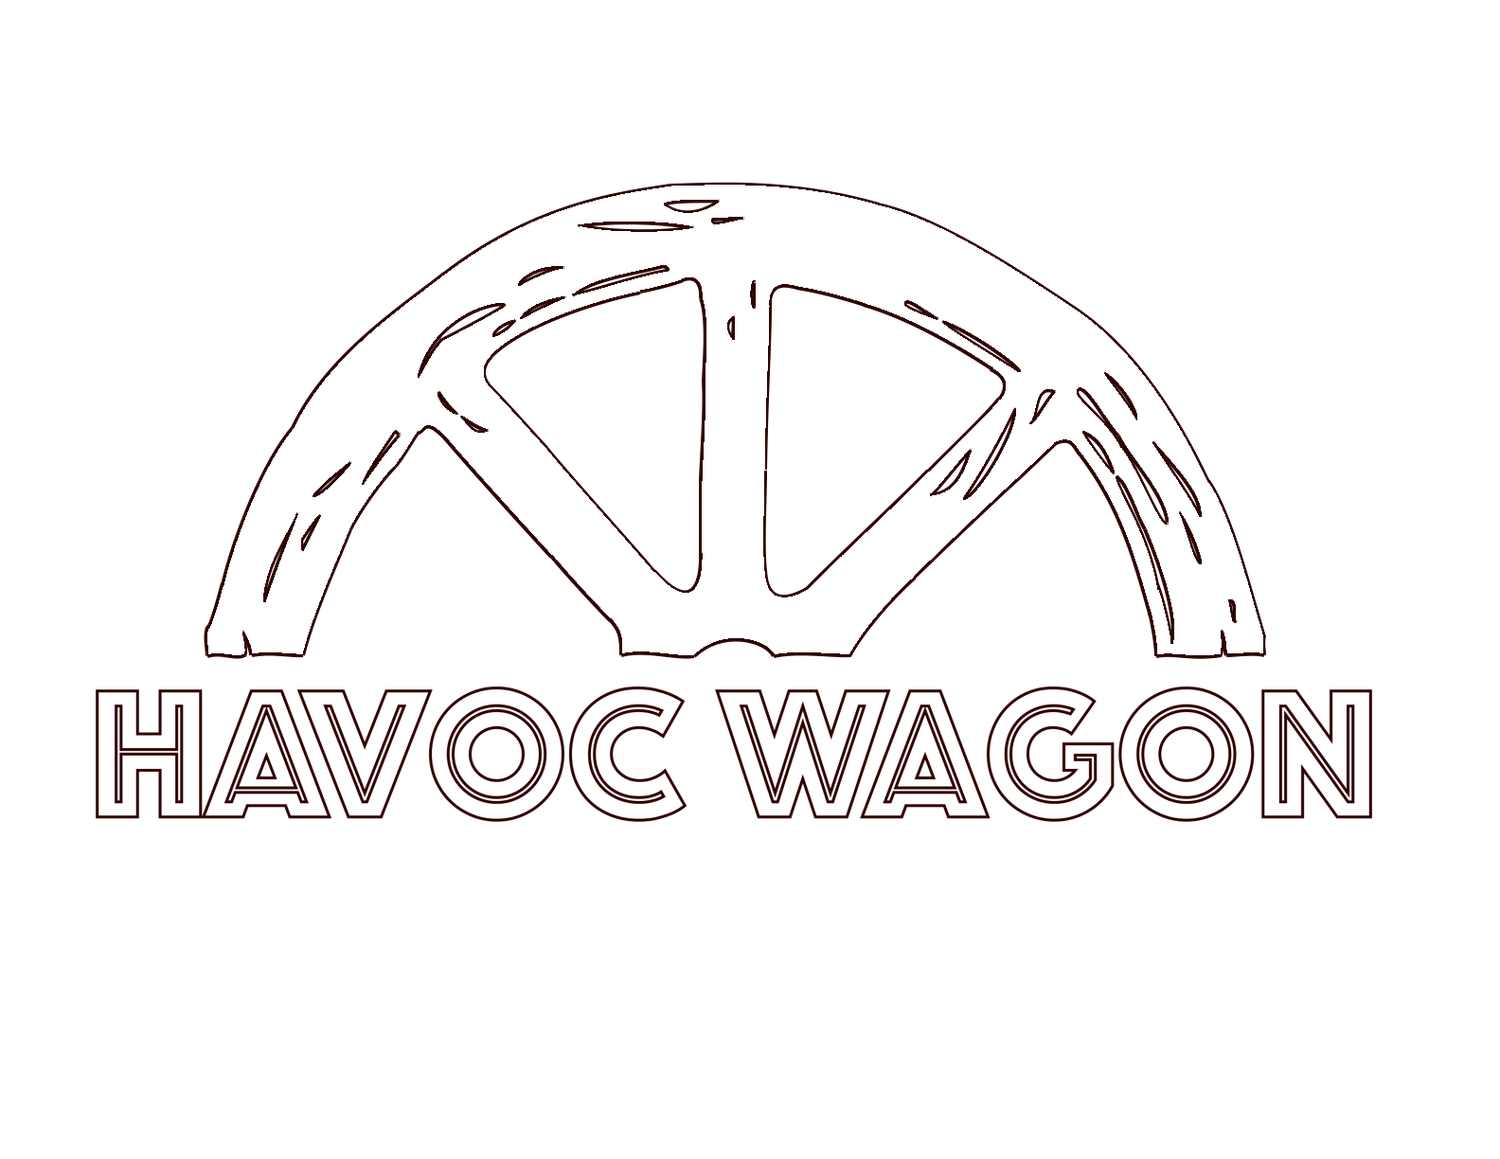 havoc wagon